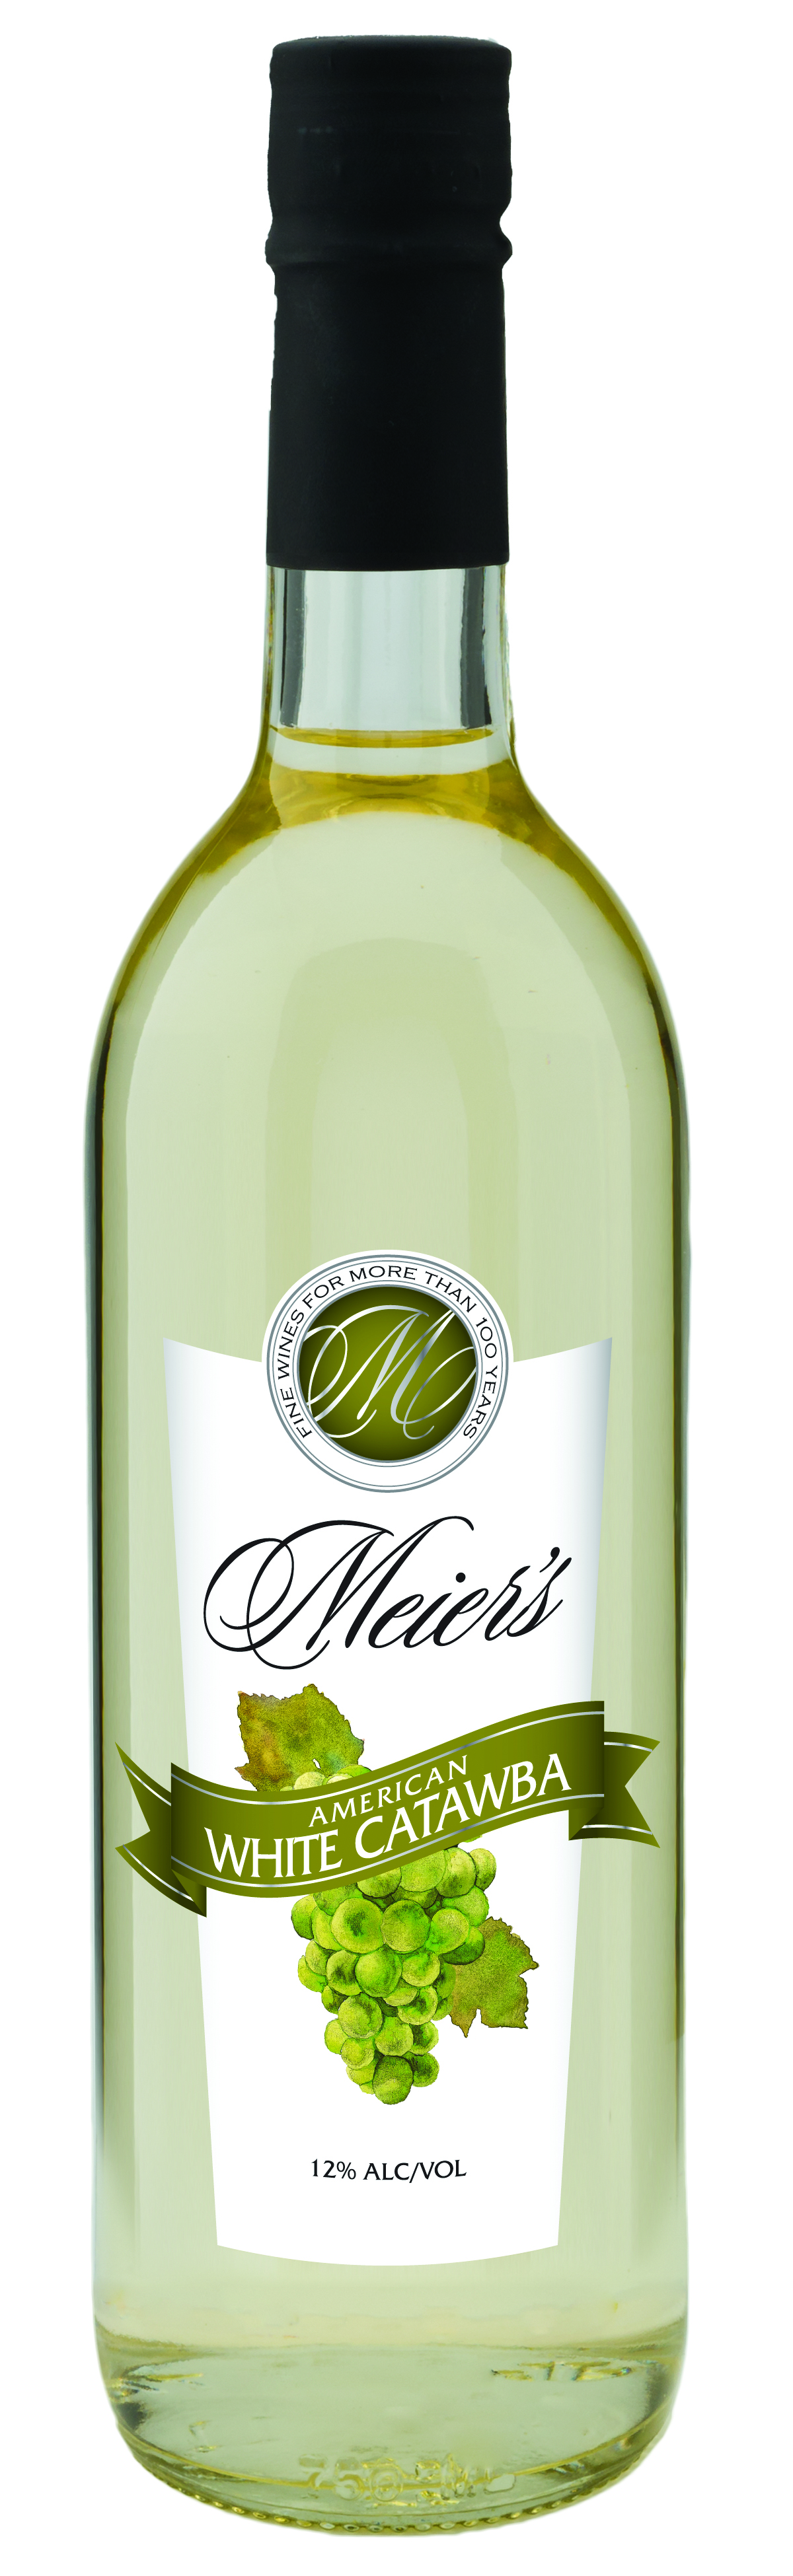 Meier's White Catawba Wine